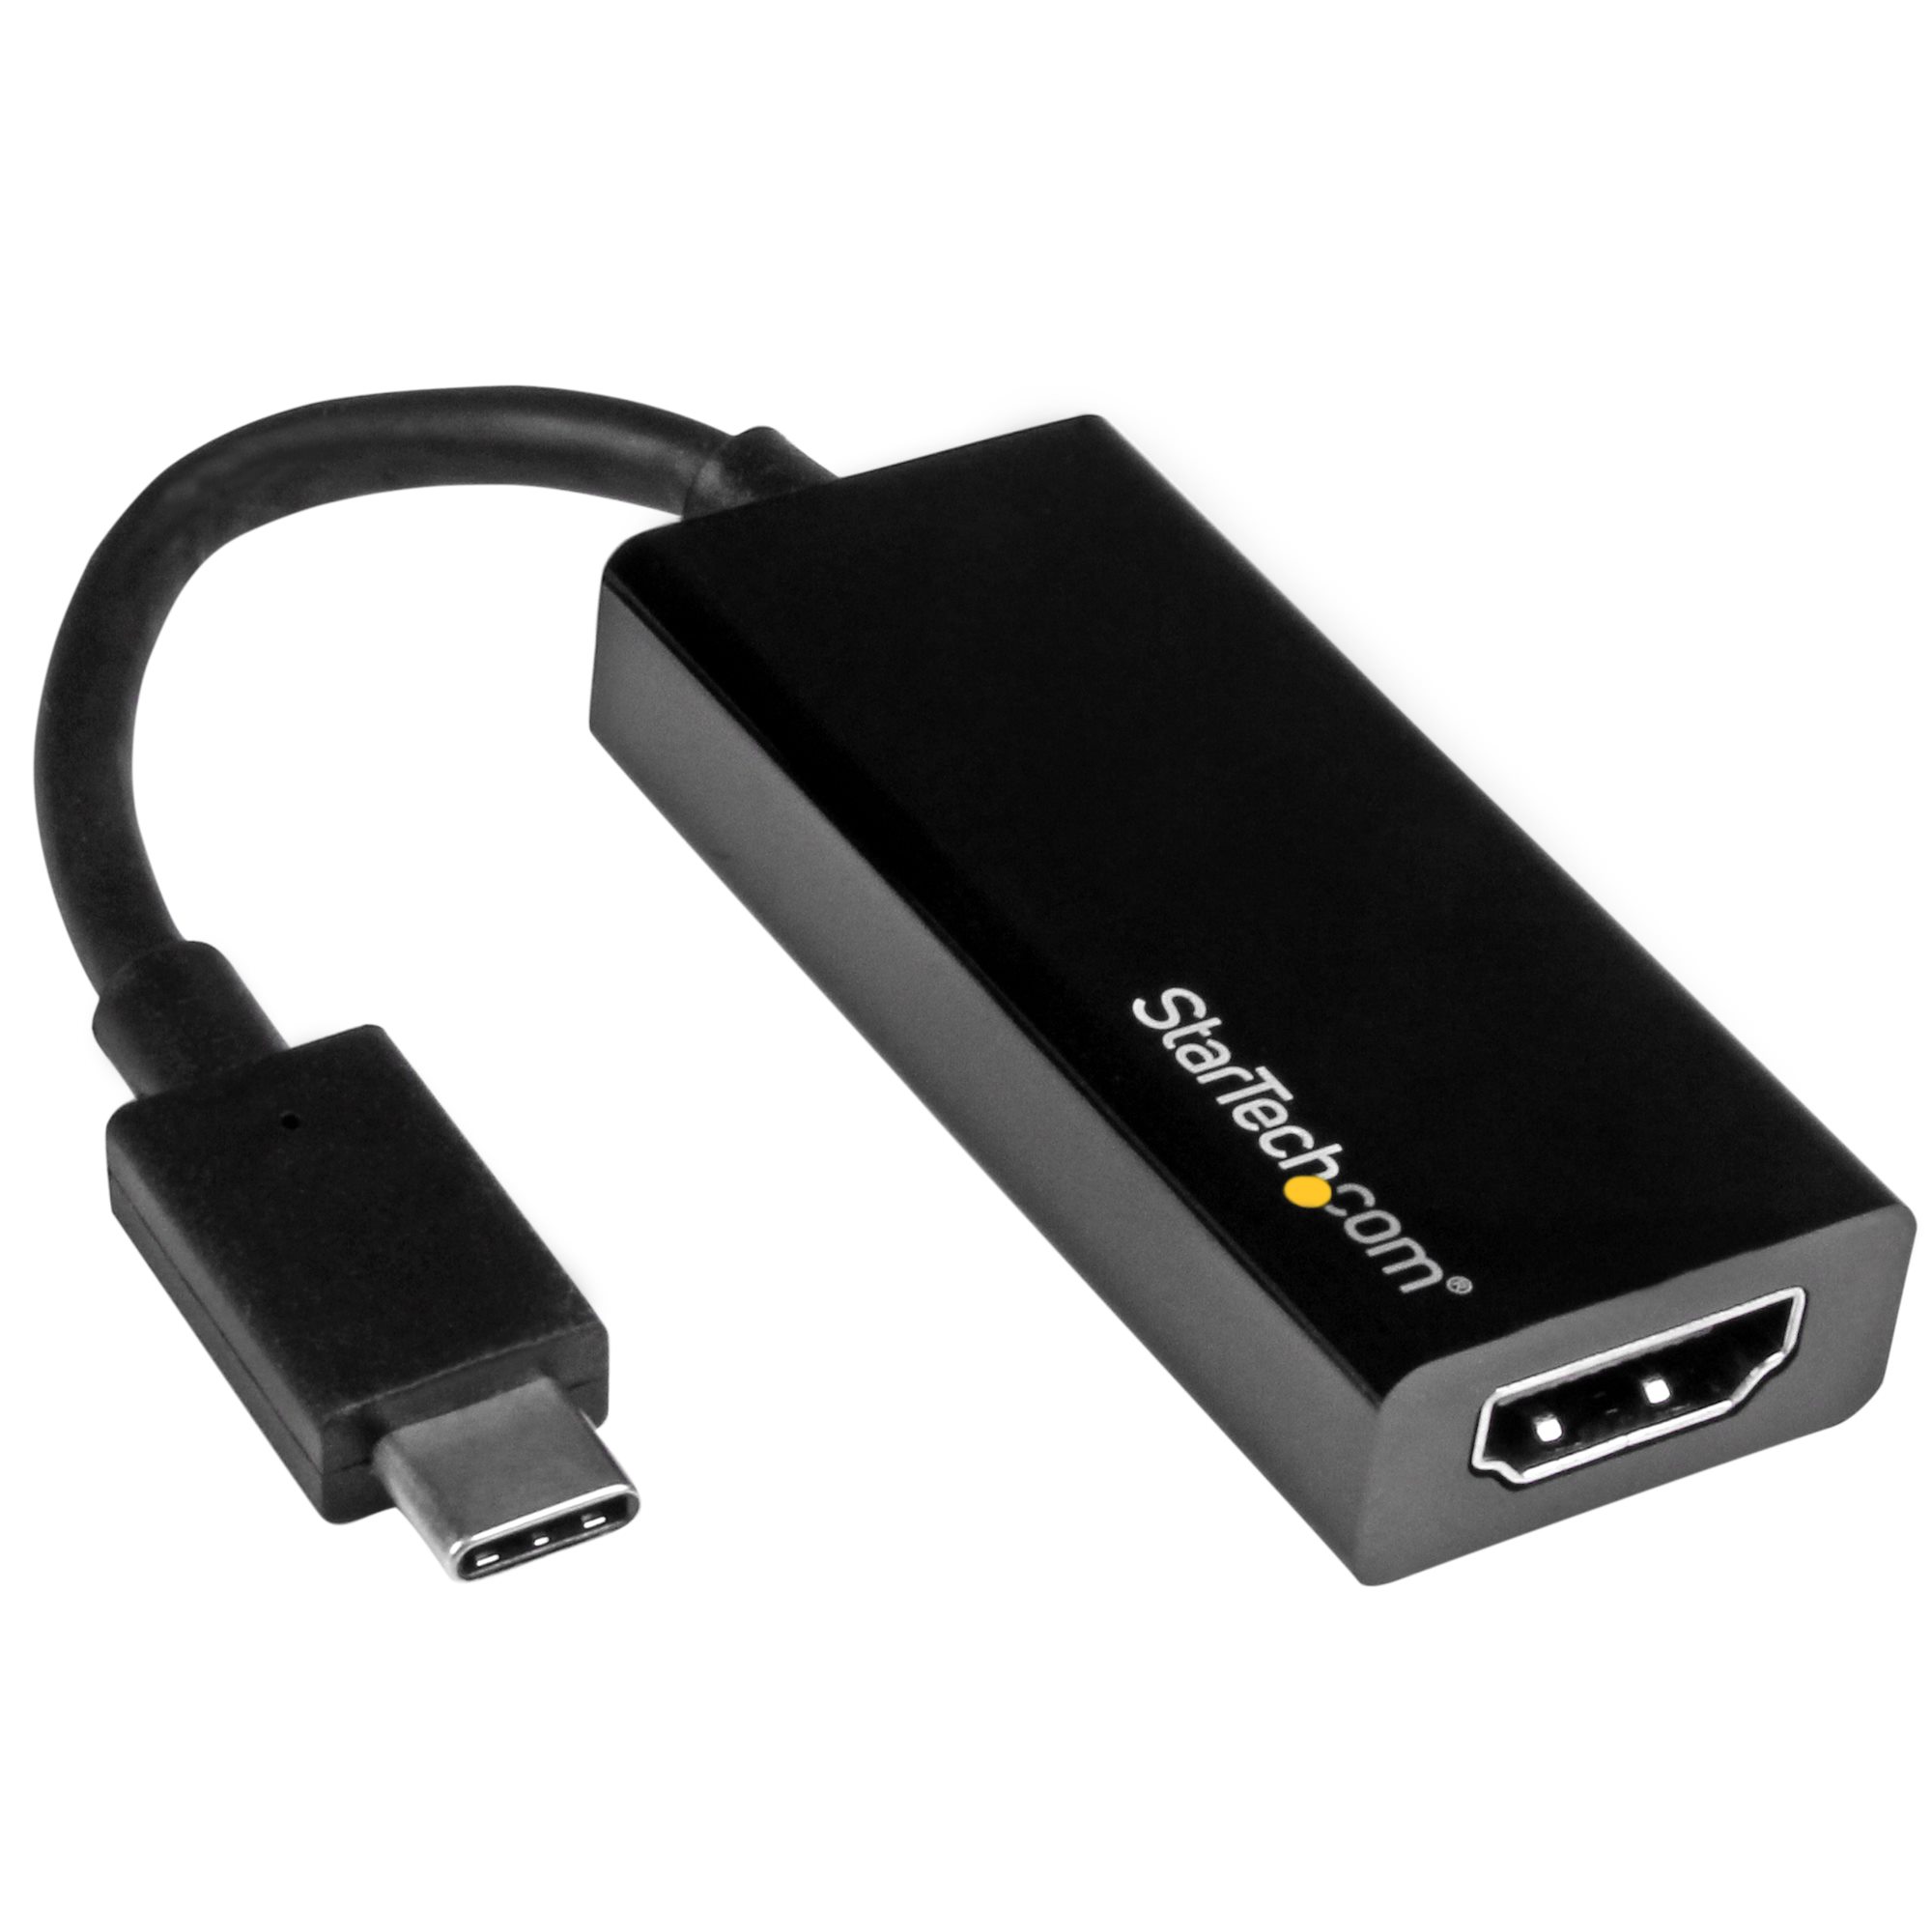 En contra guirnalda Nevada Adapter - USB to HDMI - Adaptadores de vídeo USB-C | StarTech.com España